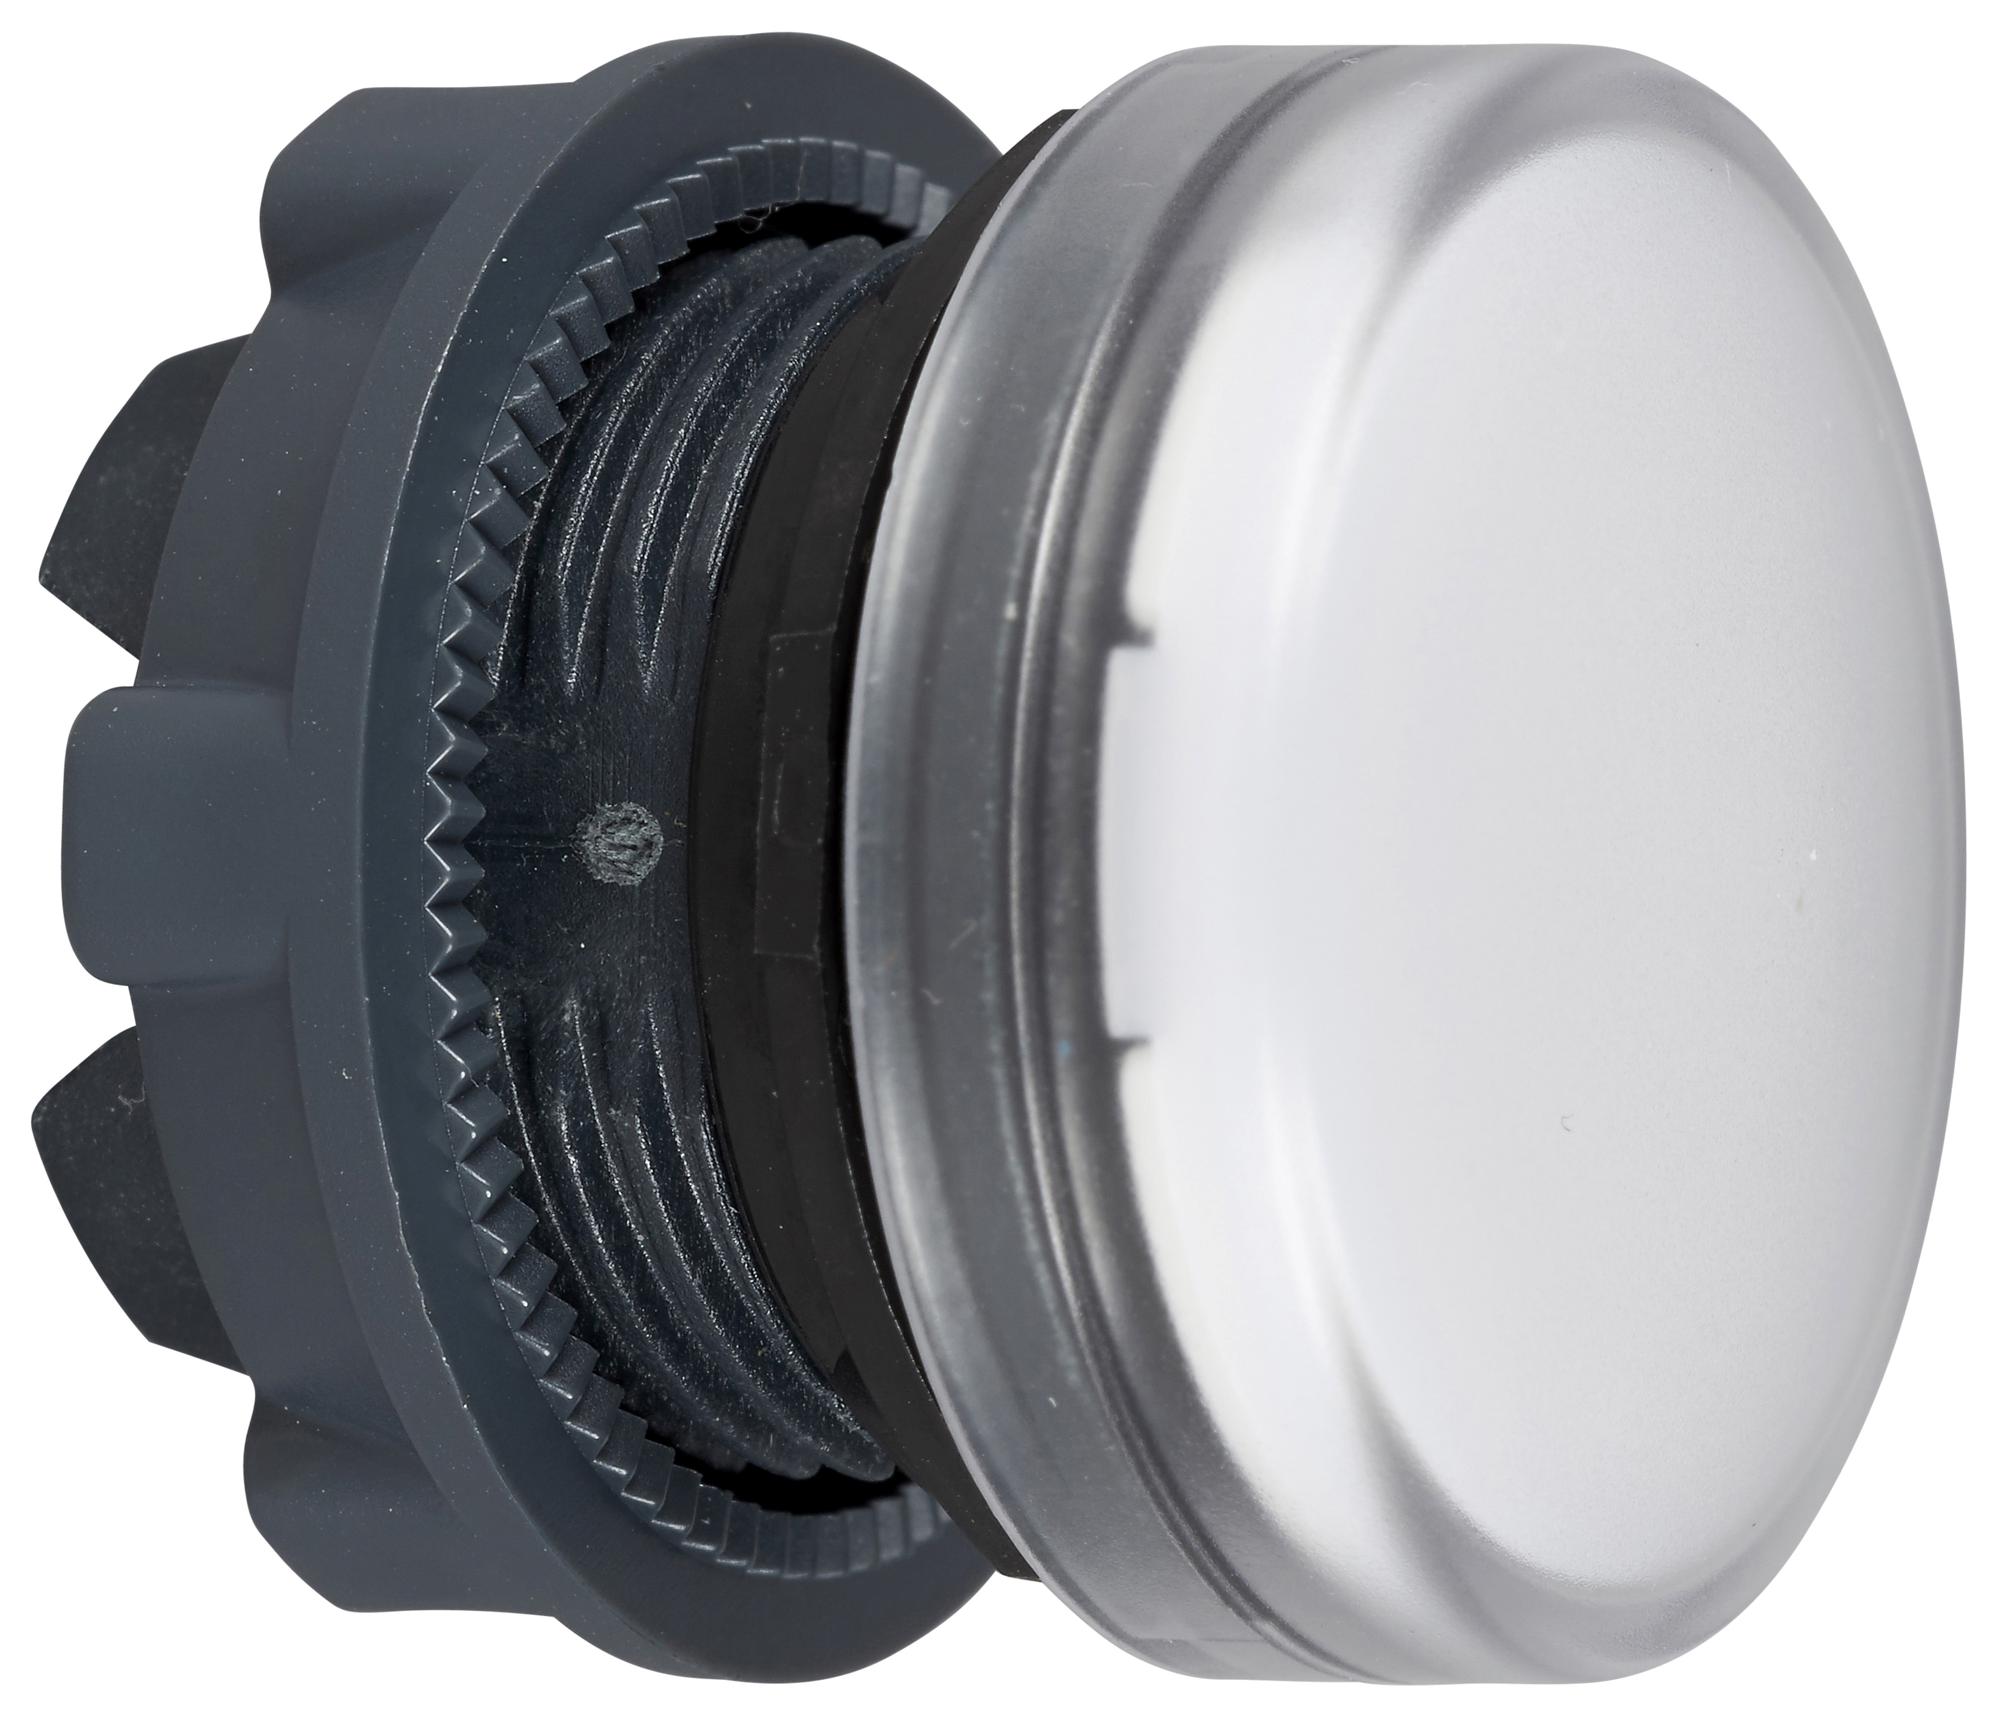 SCHNEIDER ELECTRIC Indicator Lenses ZB5AV01 PILOT LIGHT HEAD, WHITE, ROUND, 22MM SCHNEIDER ELECTRIC 3115334 ZB5AV01